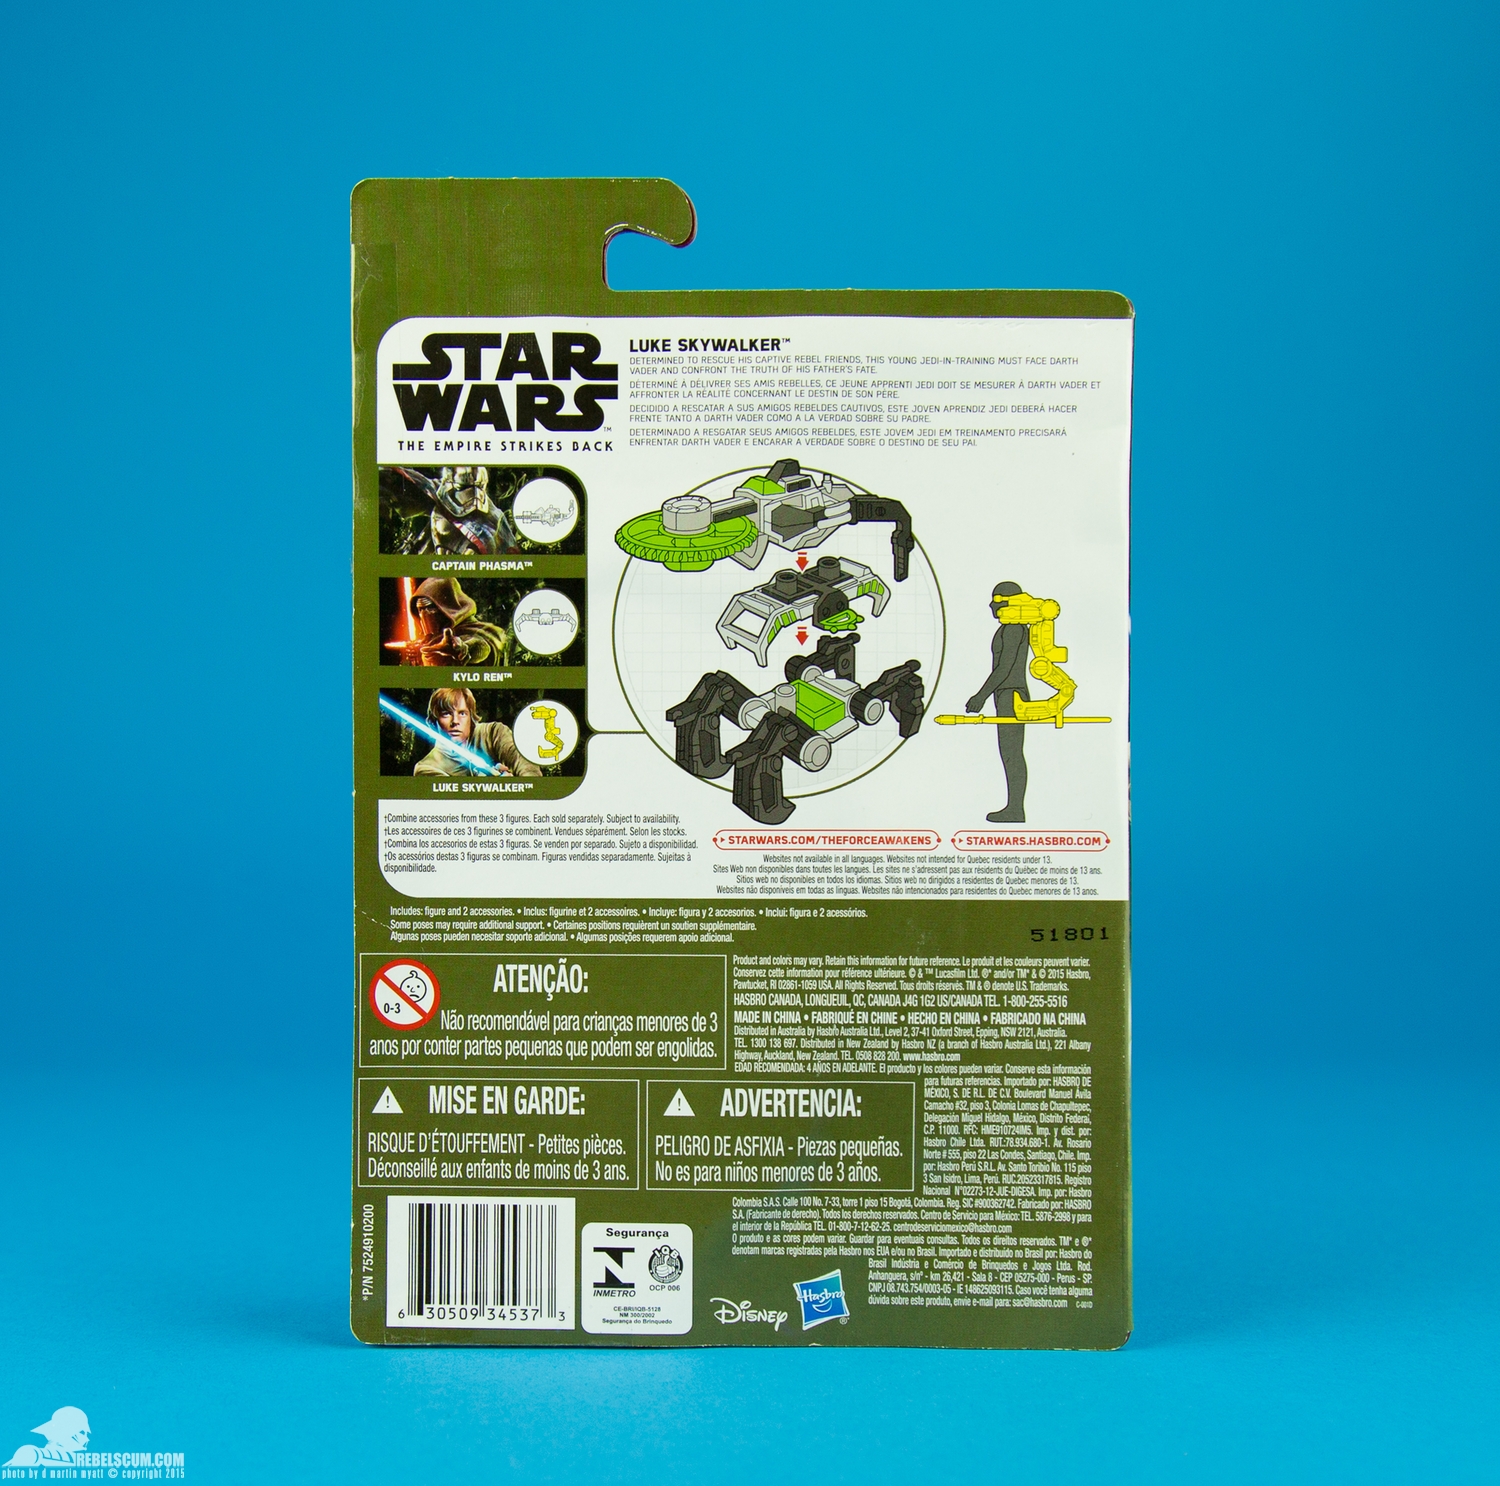 Luke-Skywalker-Star-Wars-The-Force-Awakens-Hasbro-011.jpg